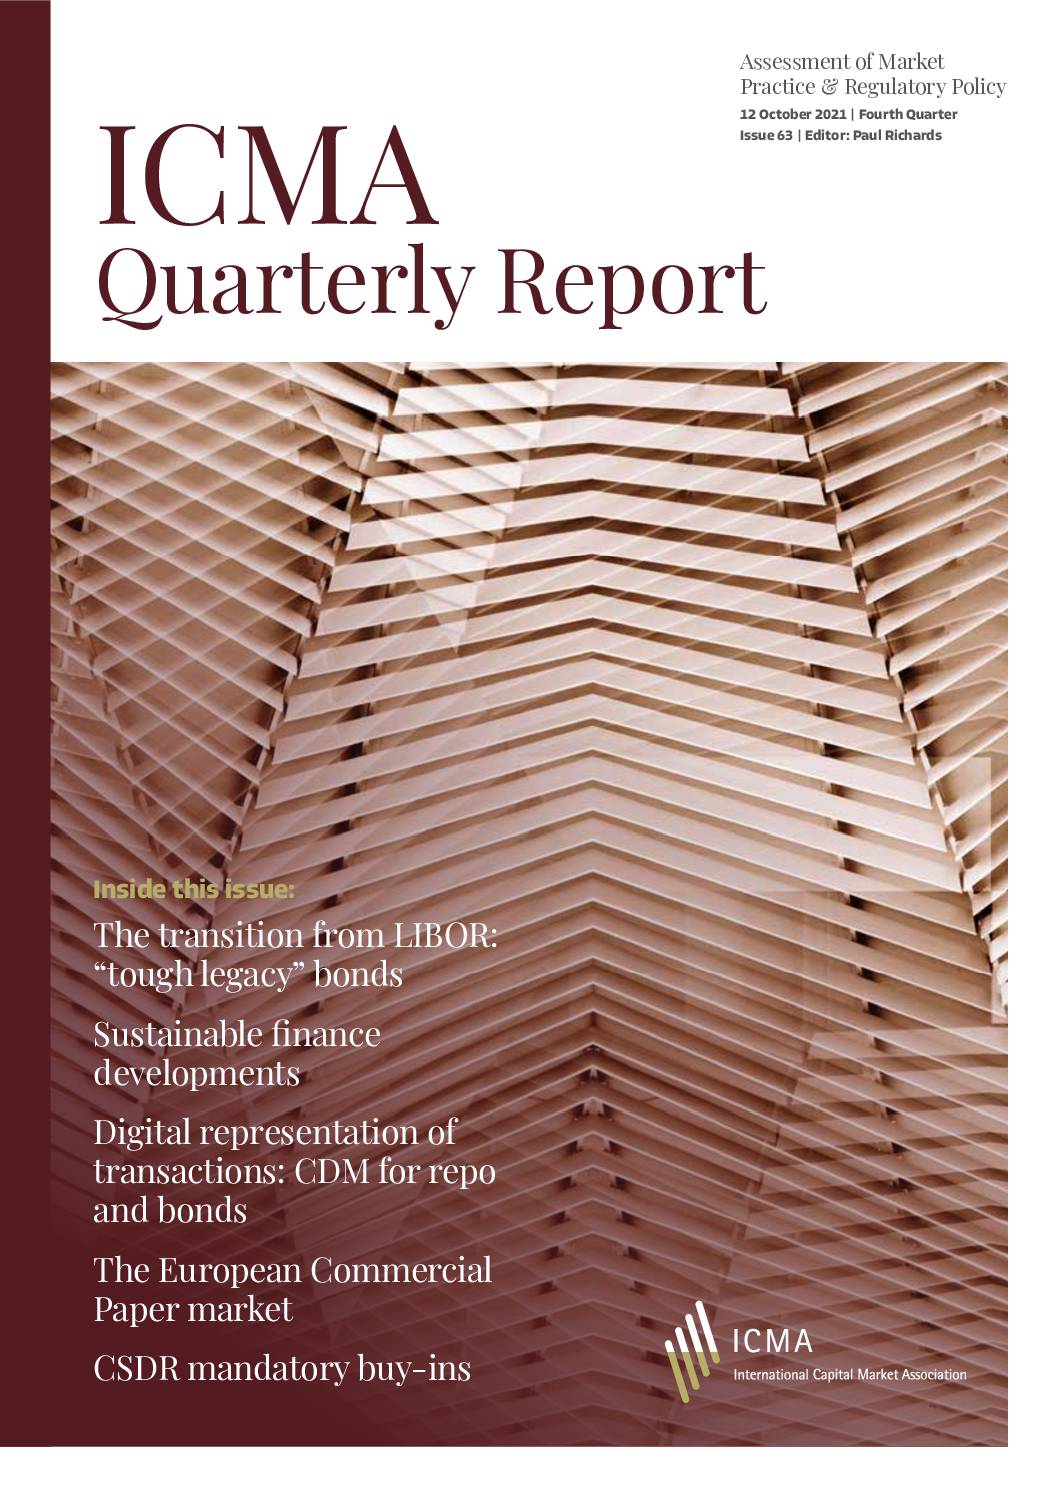 ICMA Quarterly Report Fourth Quarter 2021